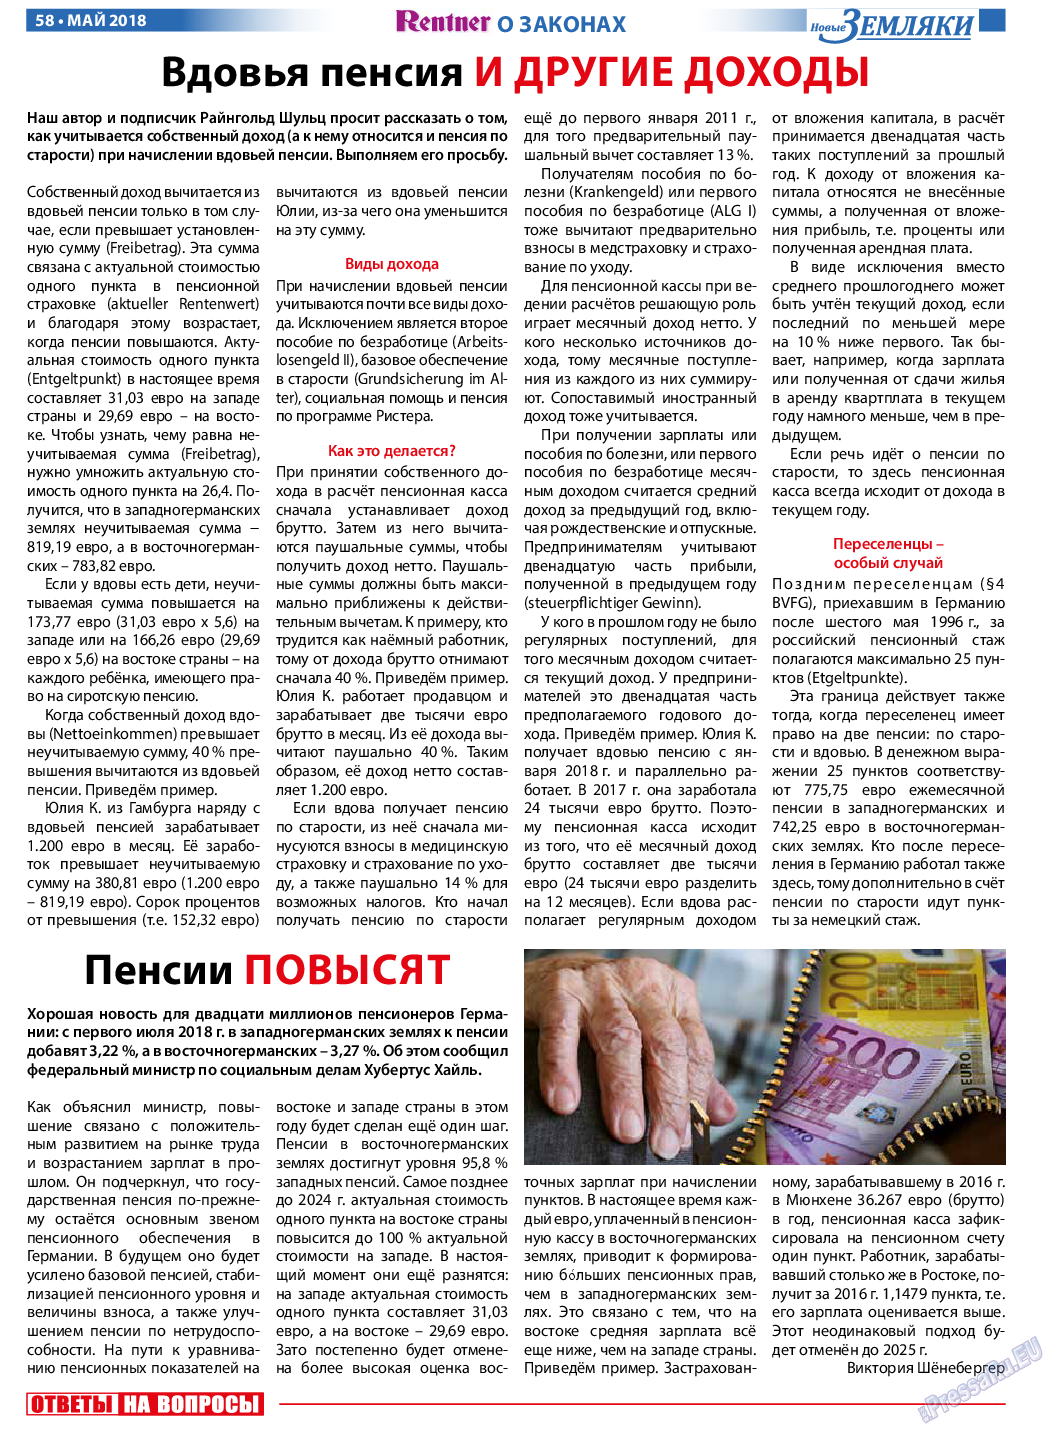 Новые Земляки, газета. 2018 №5 стр.58